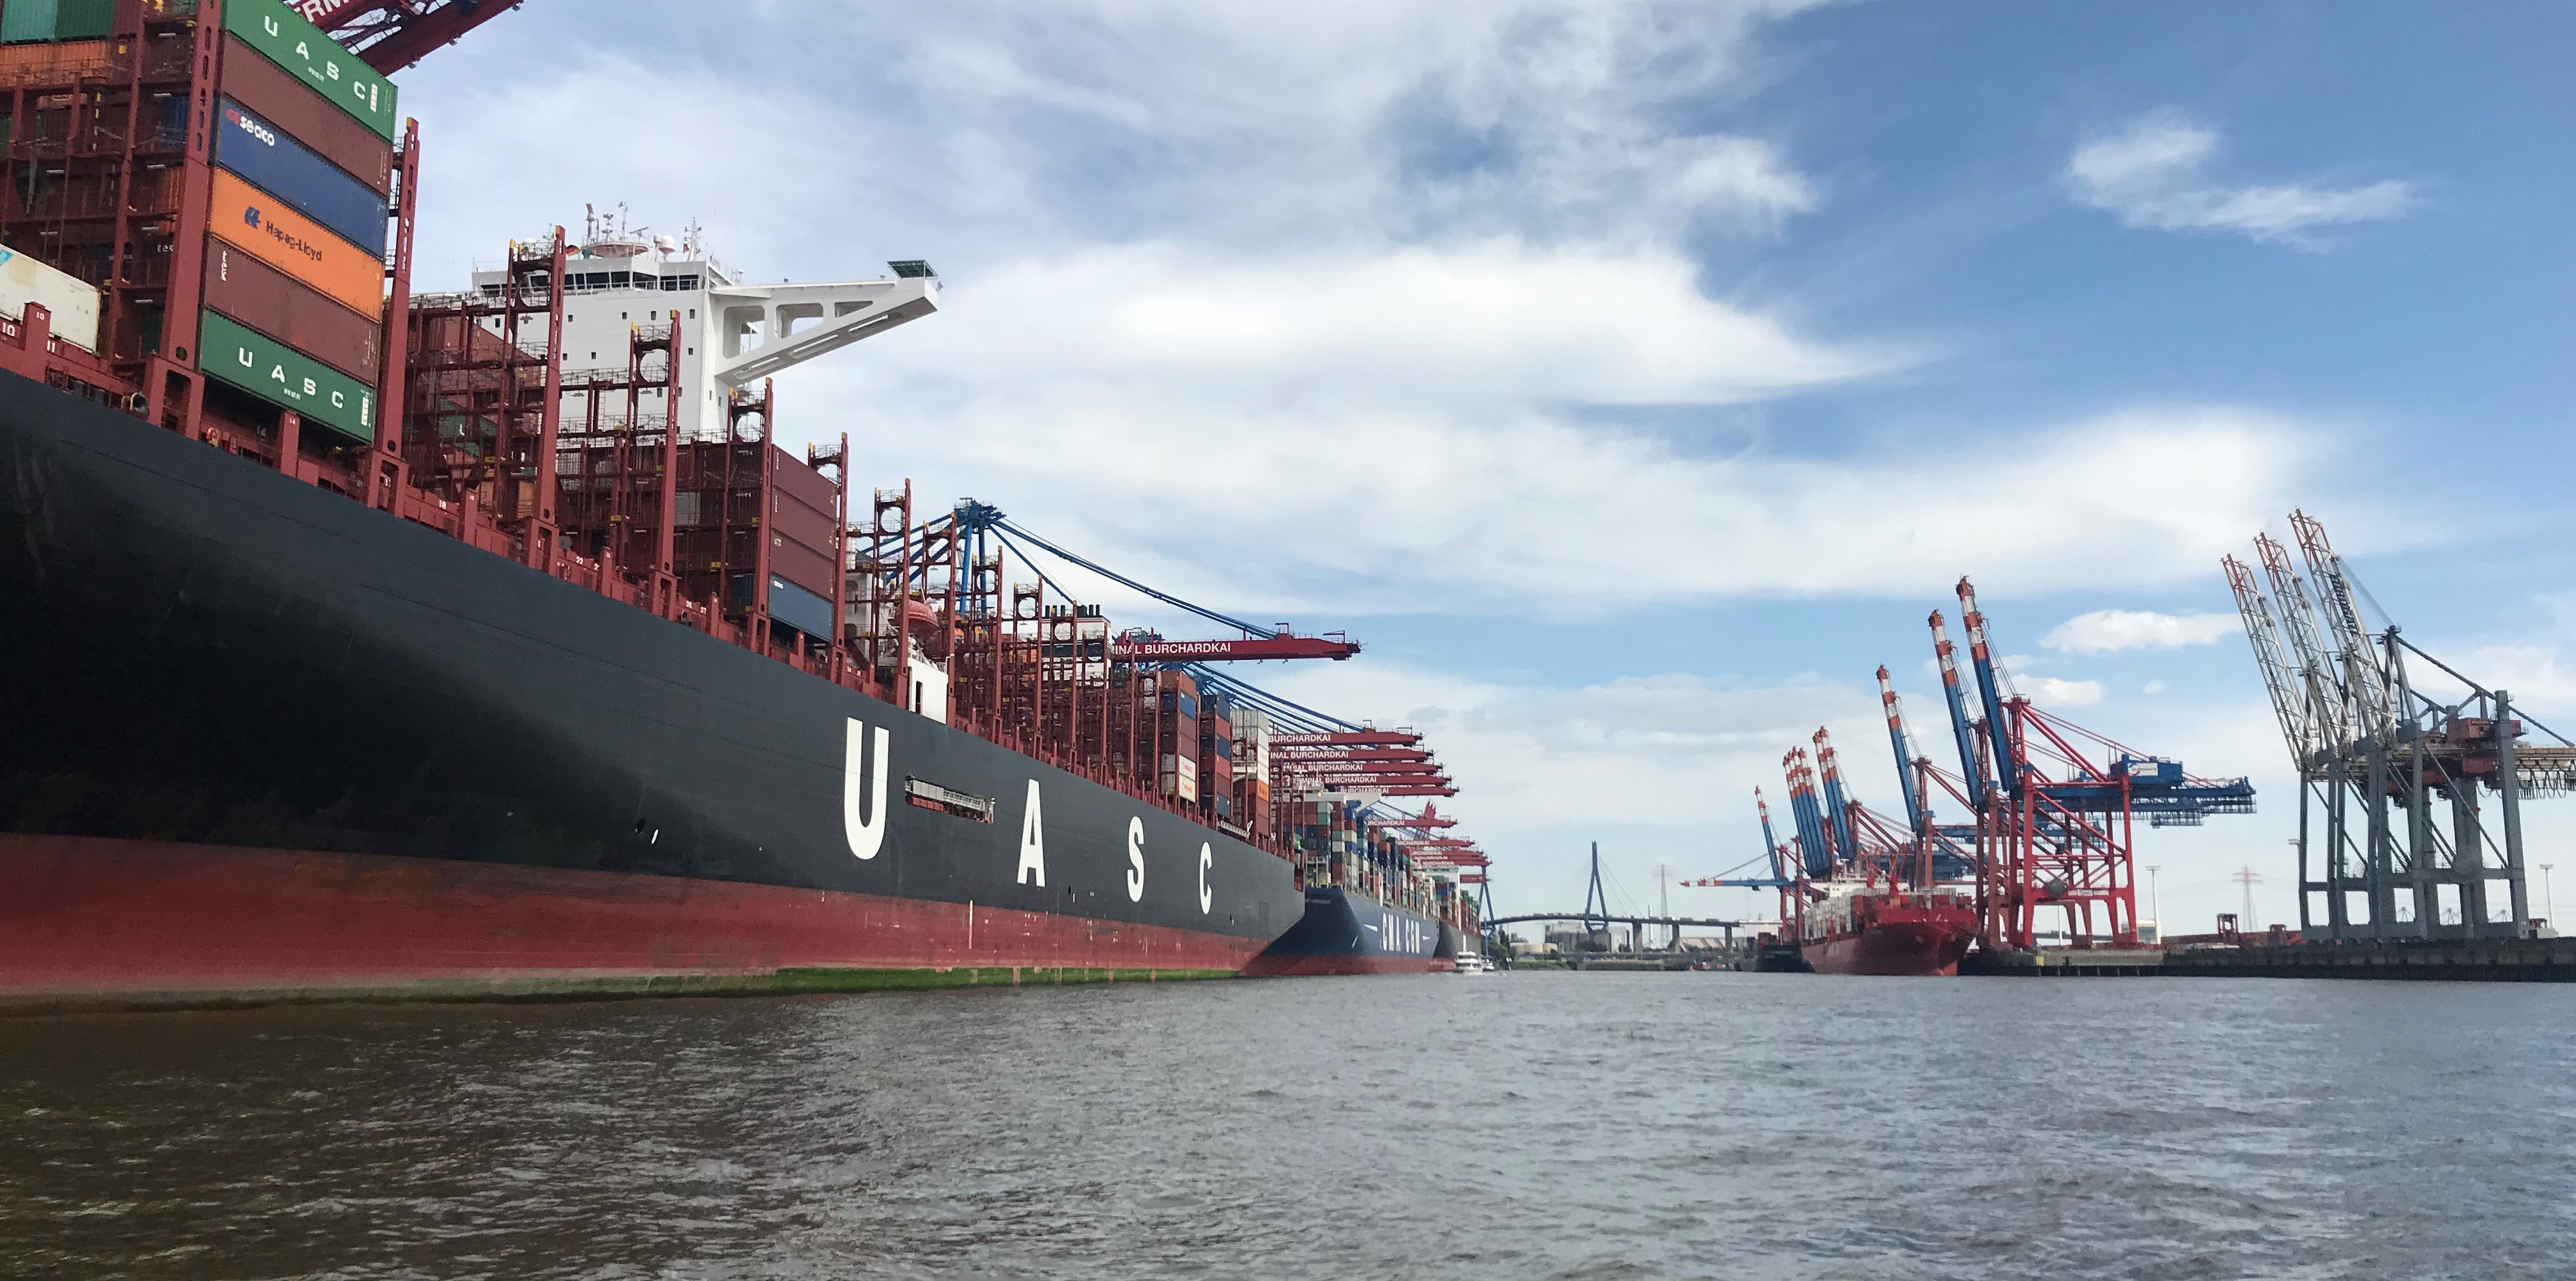 shipping in Hamburg port